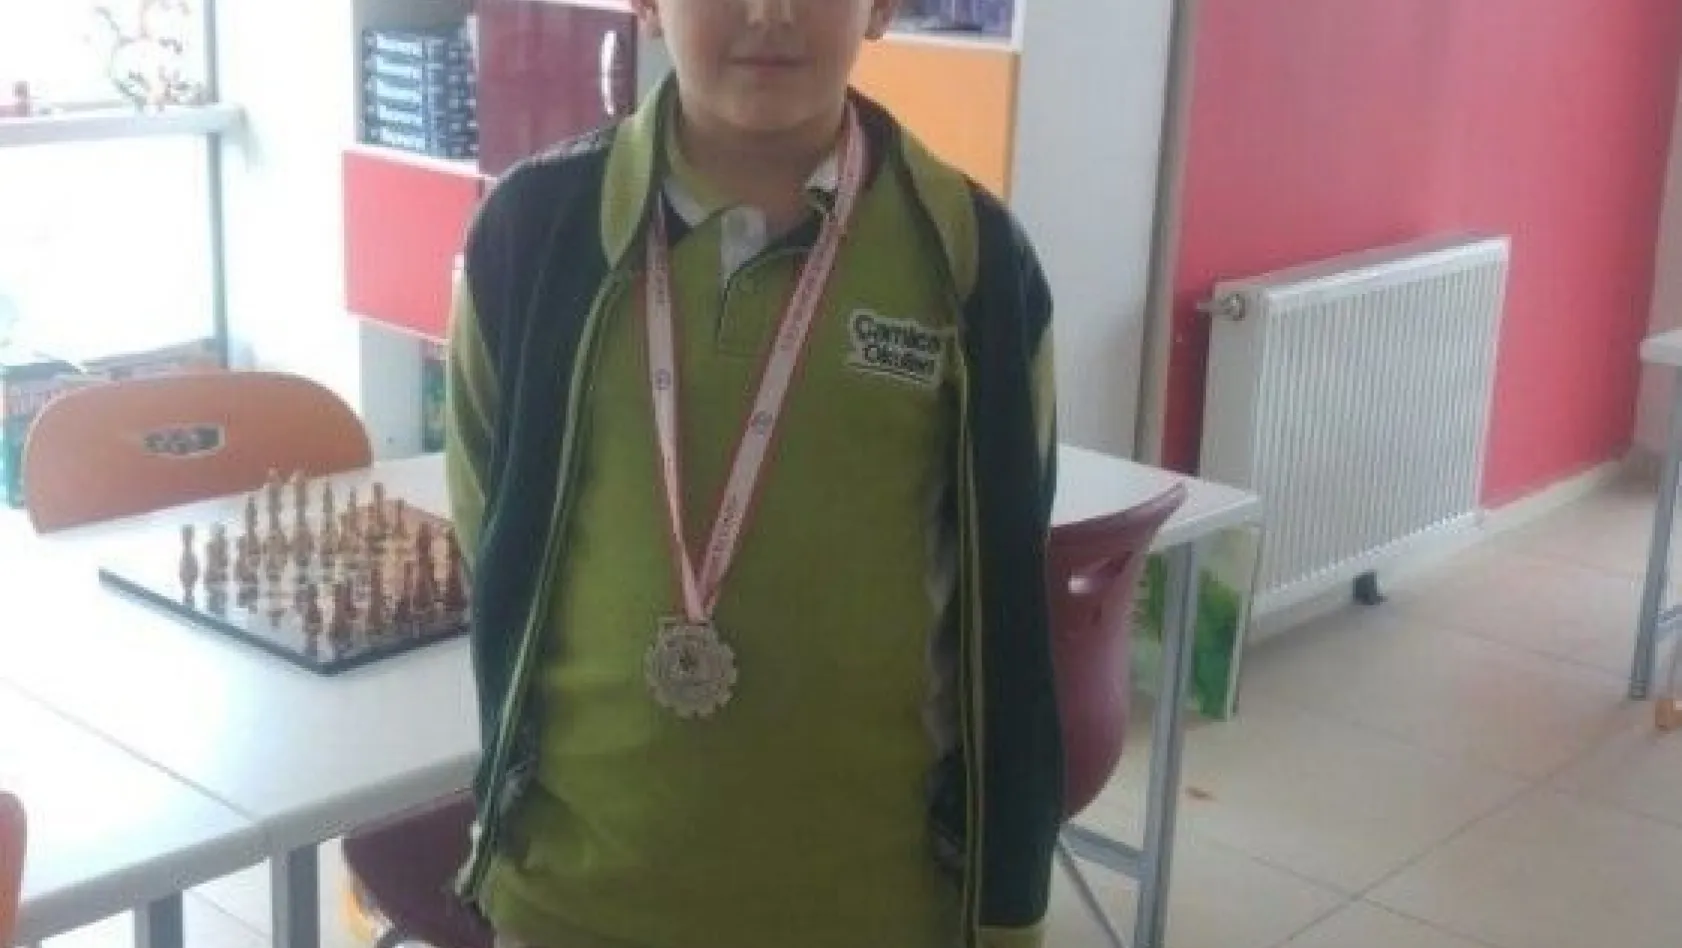 Çamlıca İlkokulu öğrenci satranç turnuvasında 2. oldu
